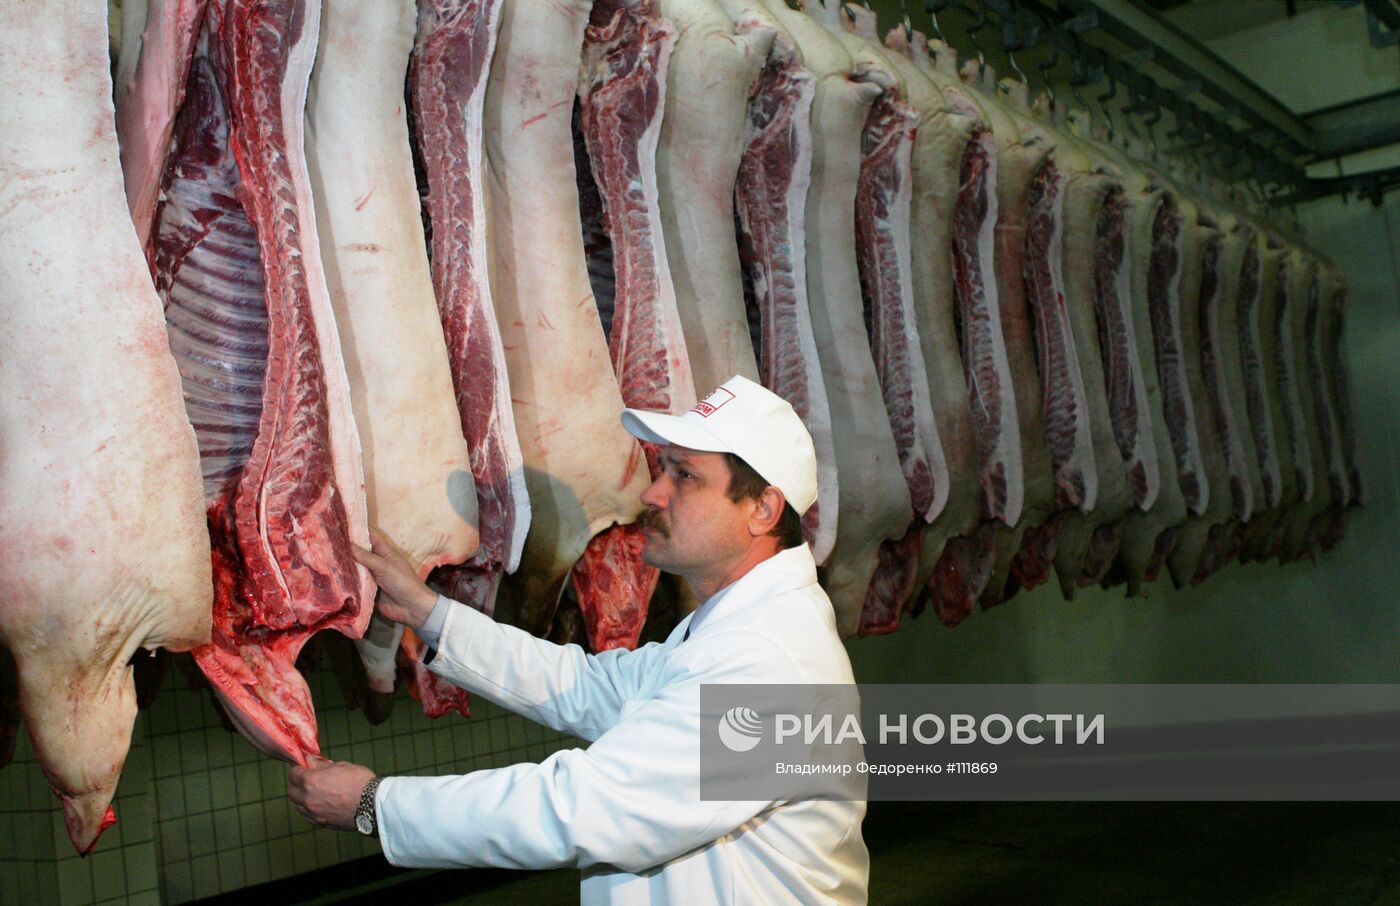 Изготовление мясной продукции на мясокомбинате Велком